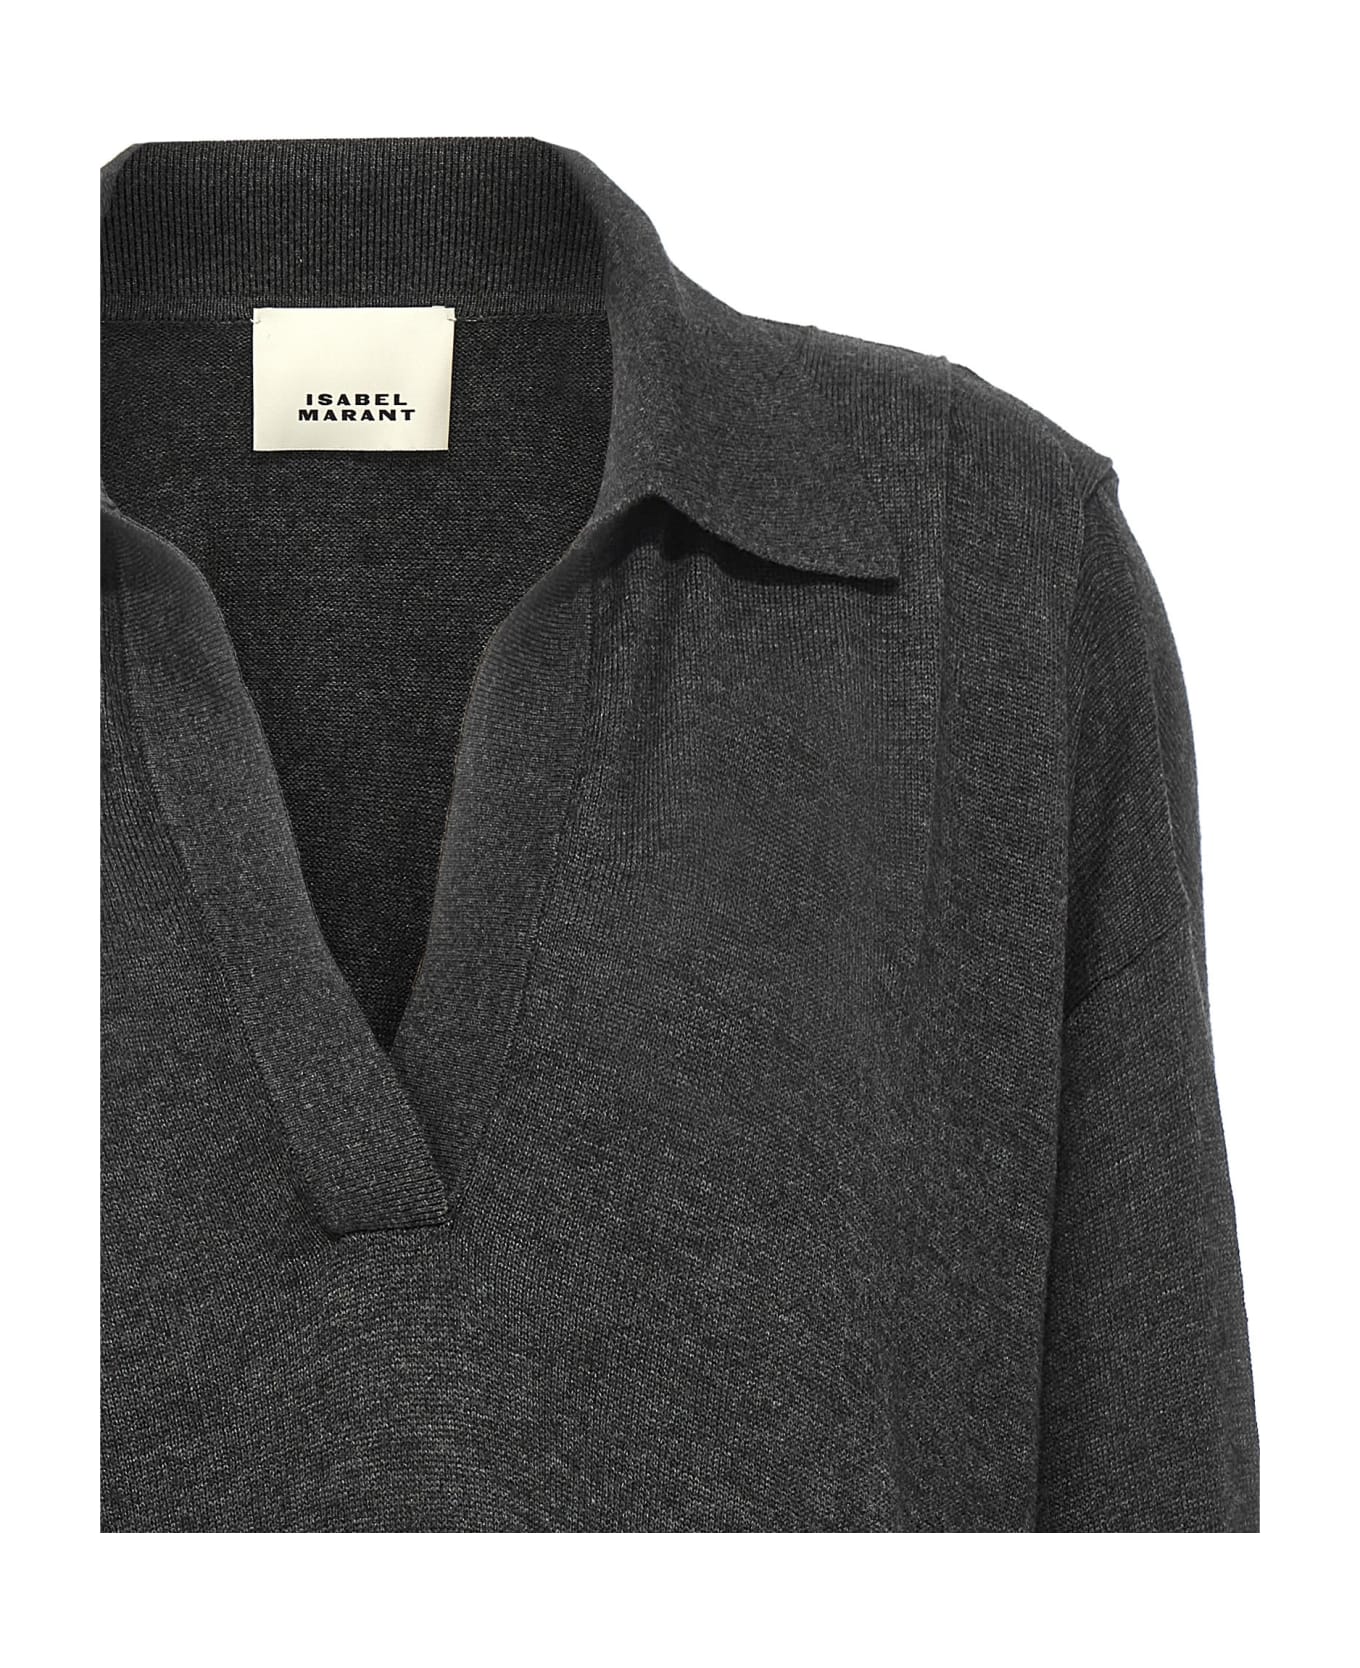 Isabel Marant Giliane Viscose And Wool Sweater - grey ニットウェア